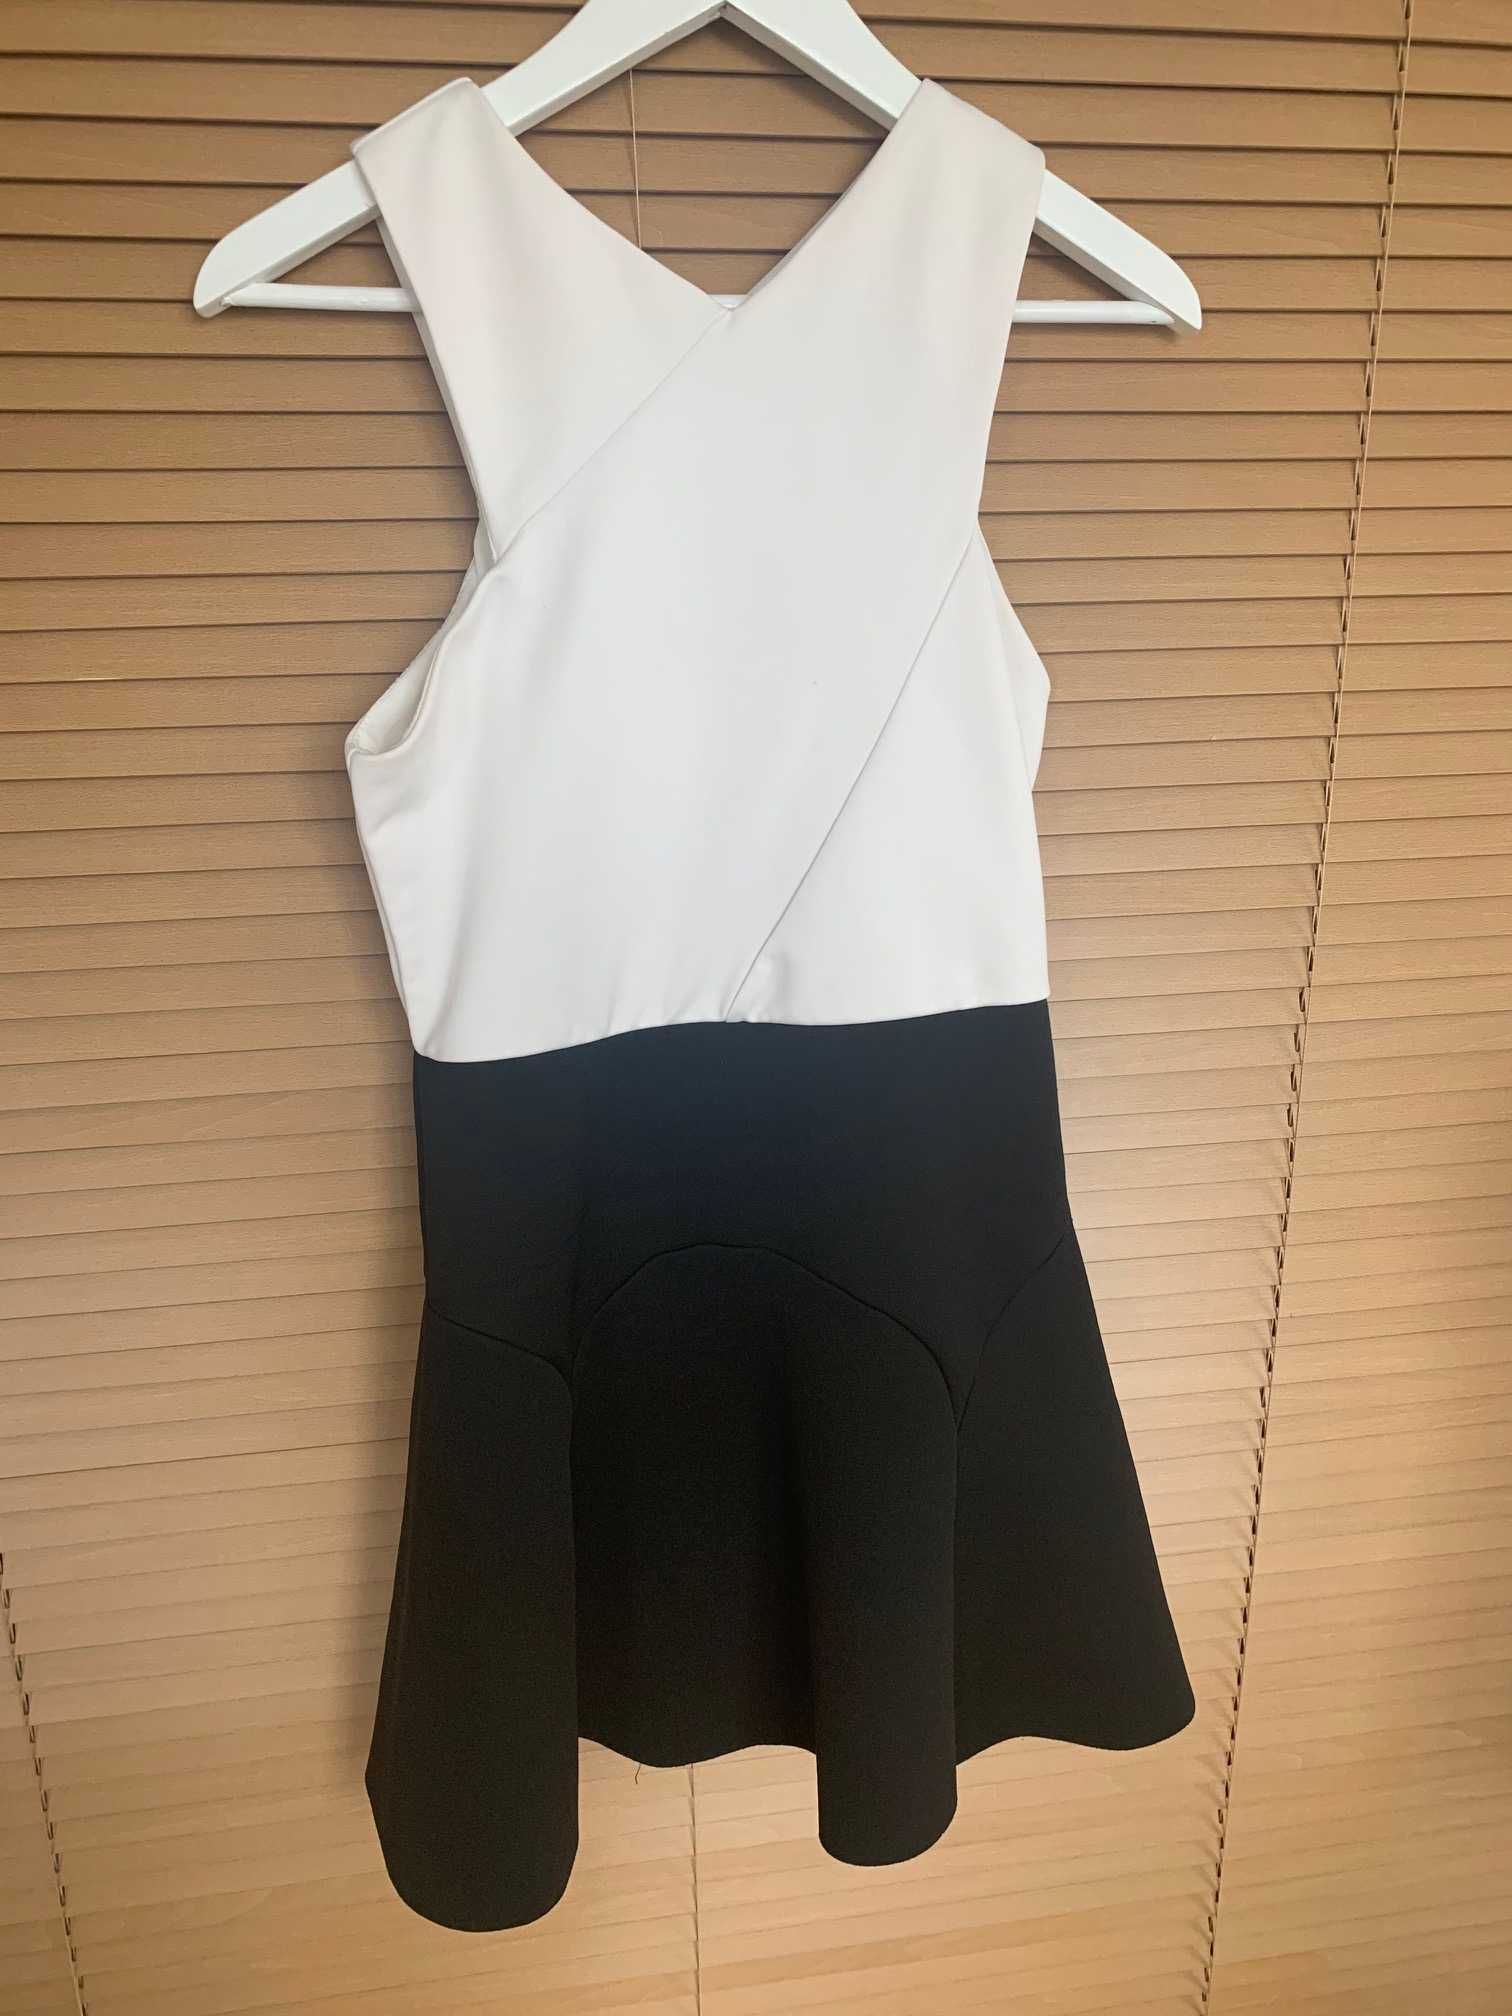 Topshop sukienka pianka neopren EUR 40 biały czarny